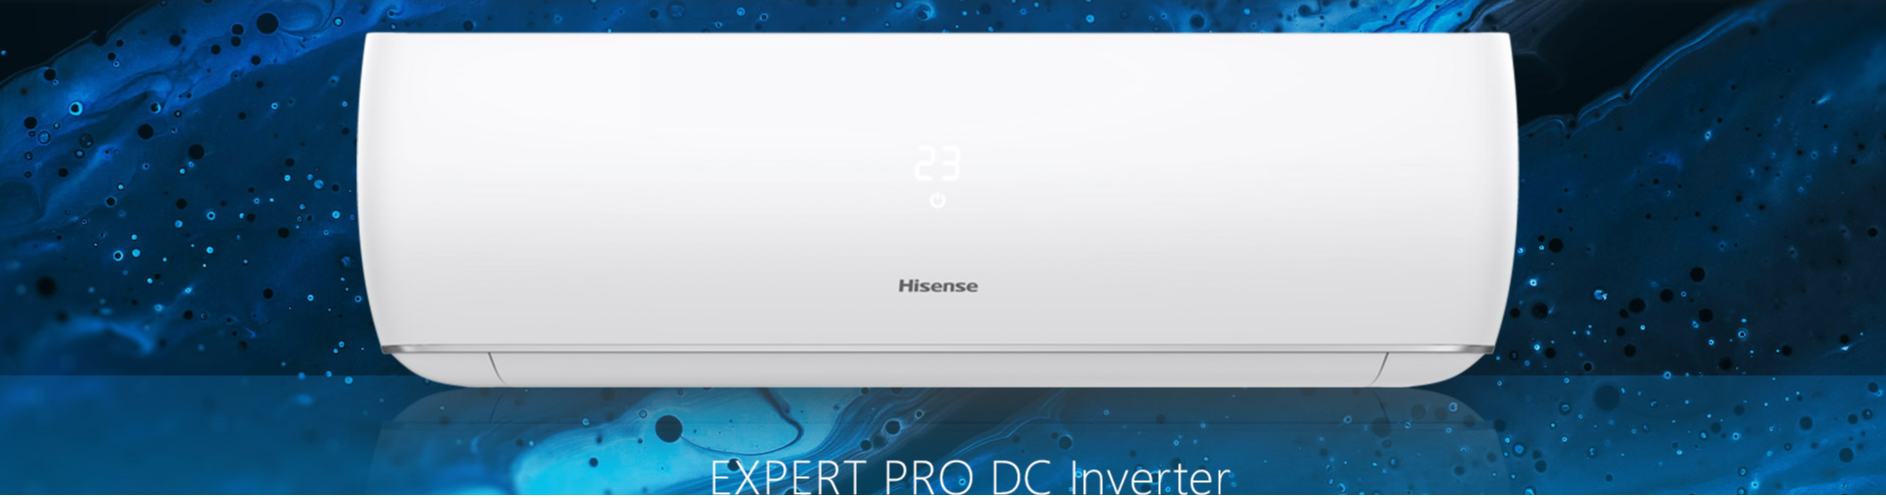 Cплит-системы Hisense серии EXPERT PRO DC Inverter